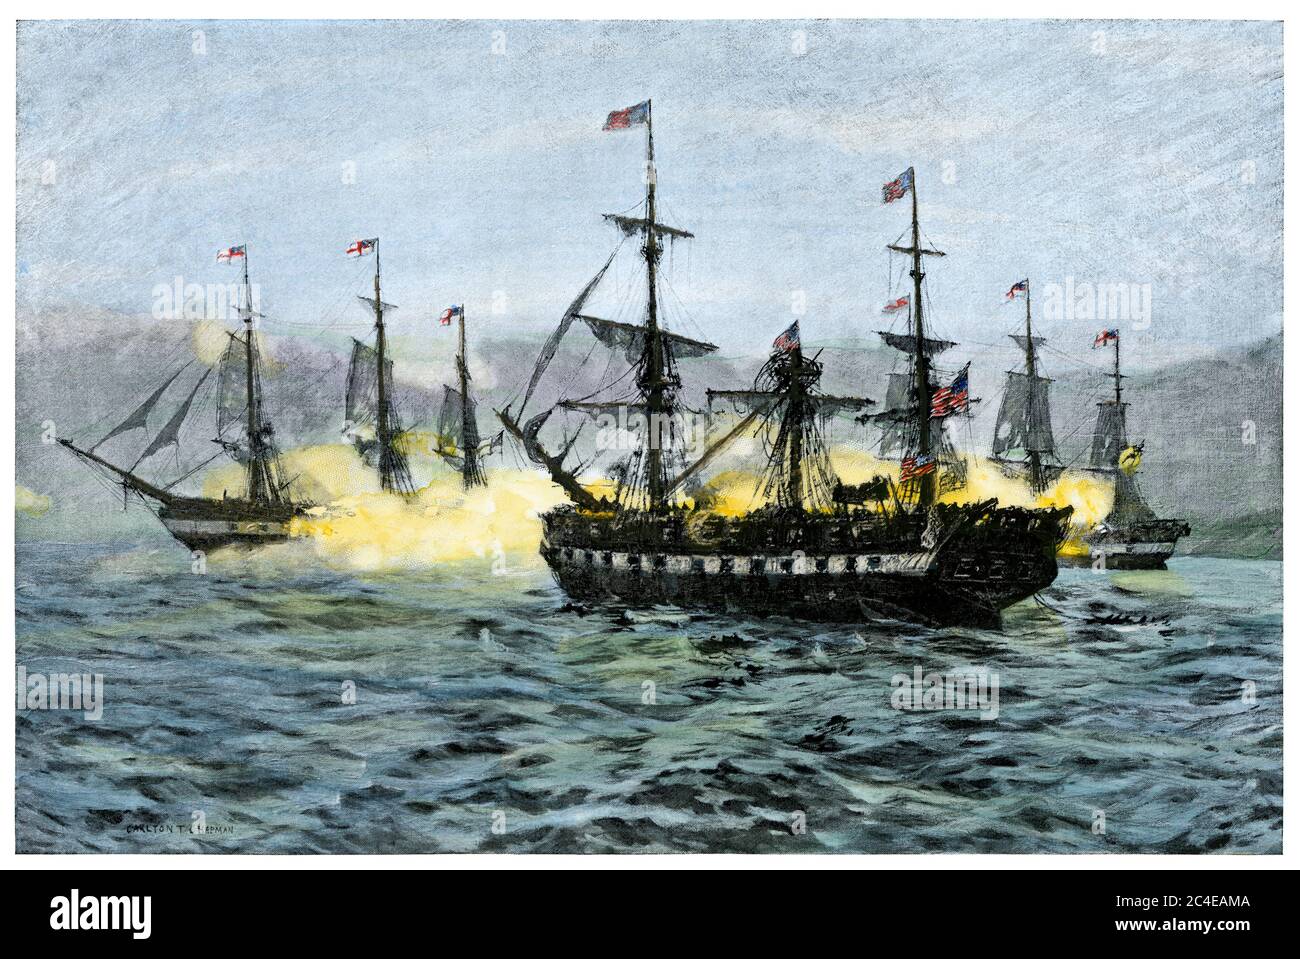 Eroberung der USS Essex durch britische Kriegsschiffe, Valparaiso, Chile, 1814. Handkolorierter Halbton einer Illustration Stockfoto